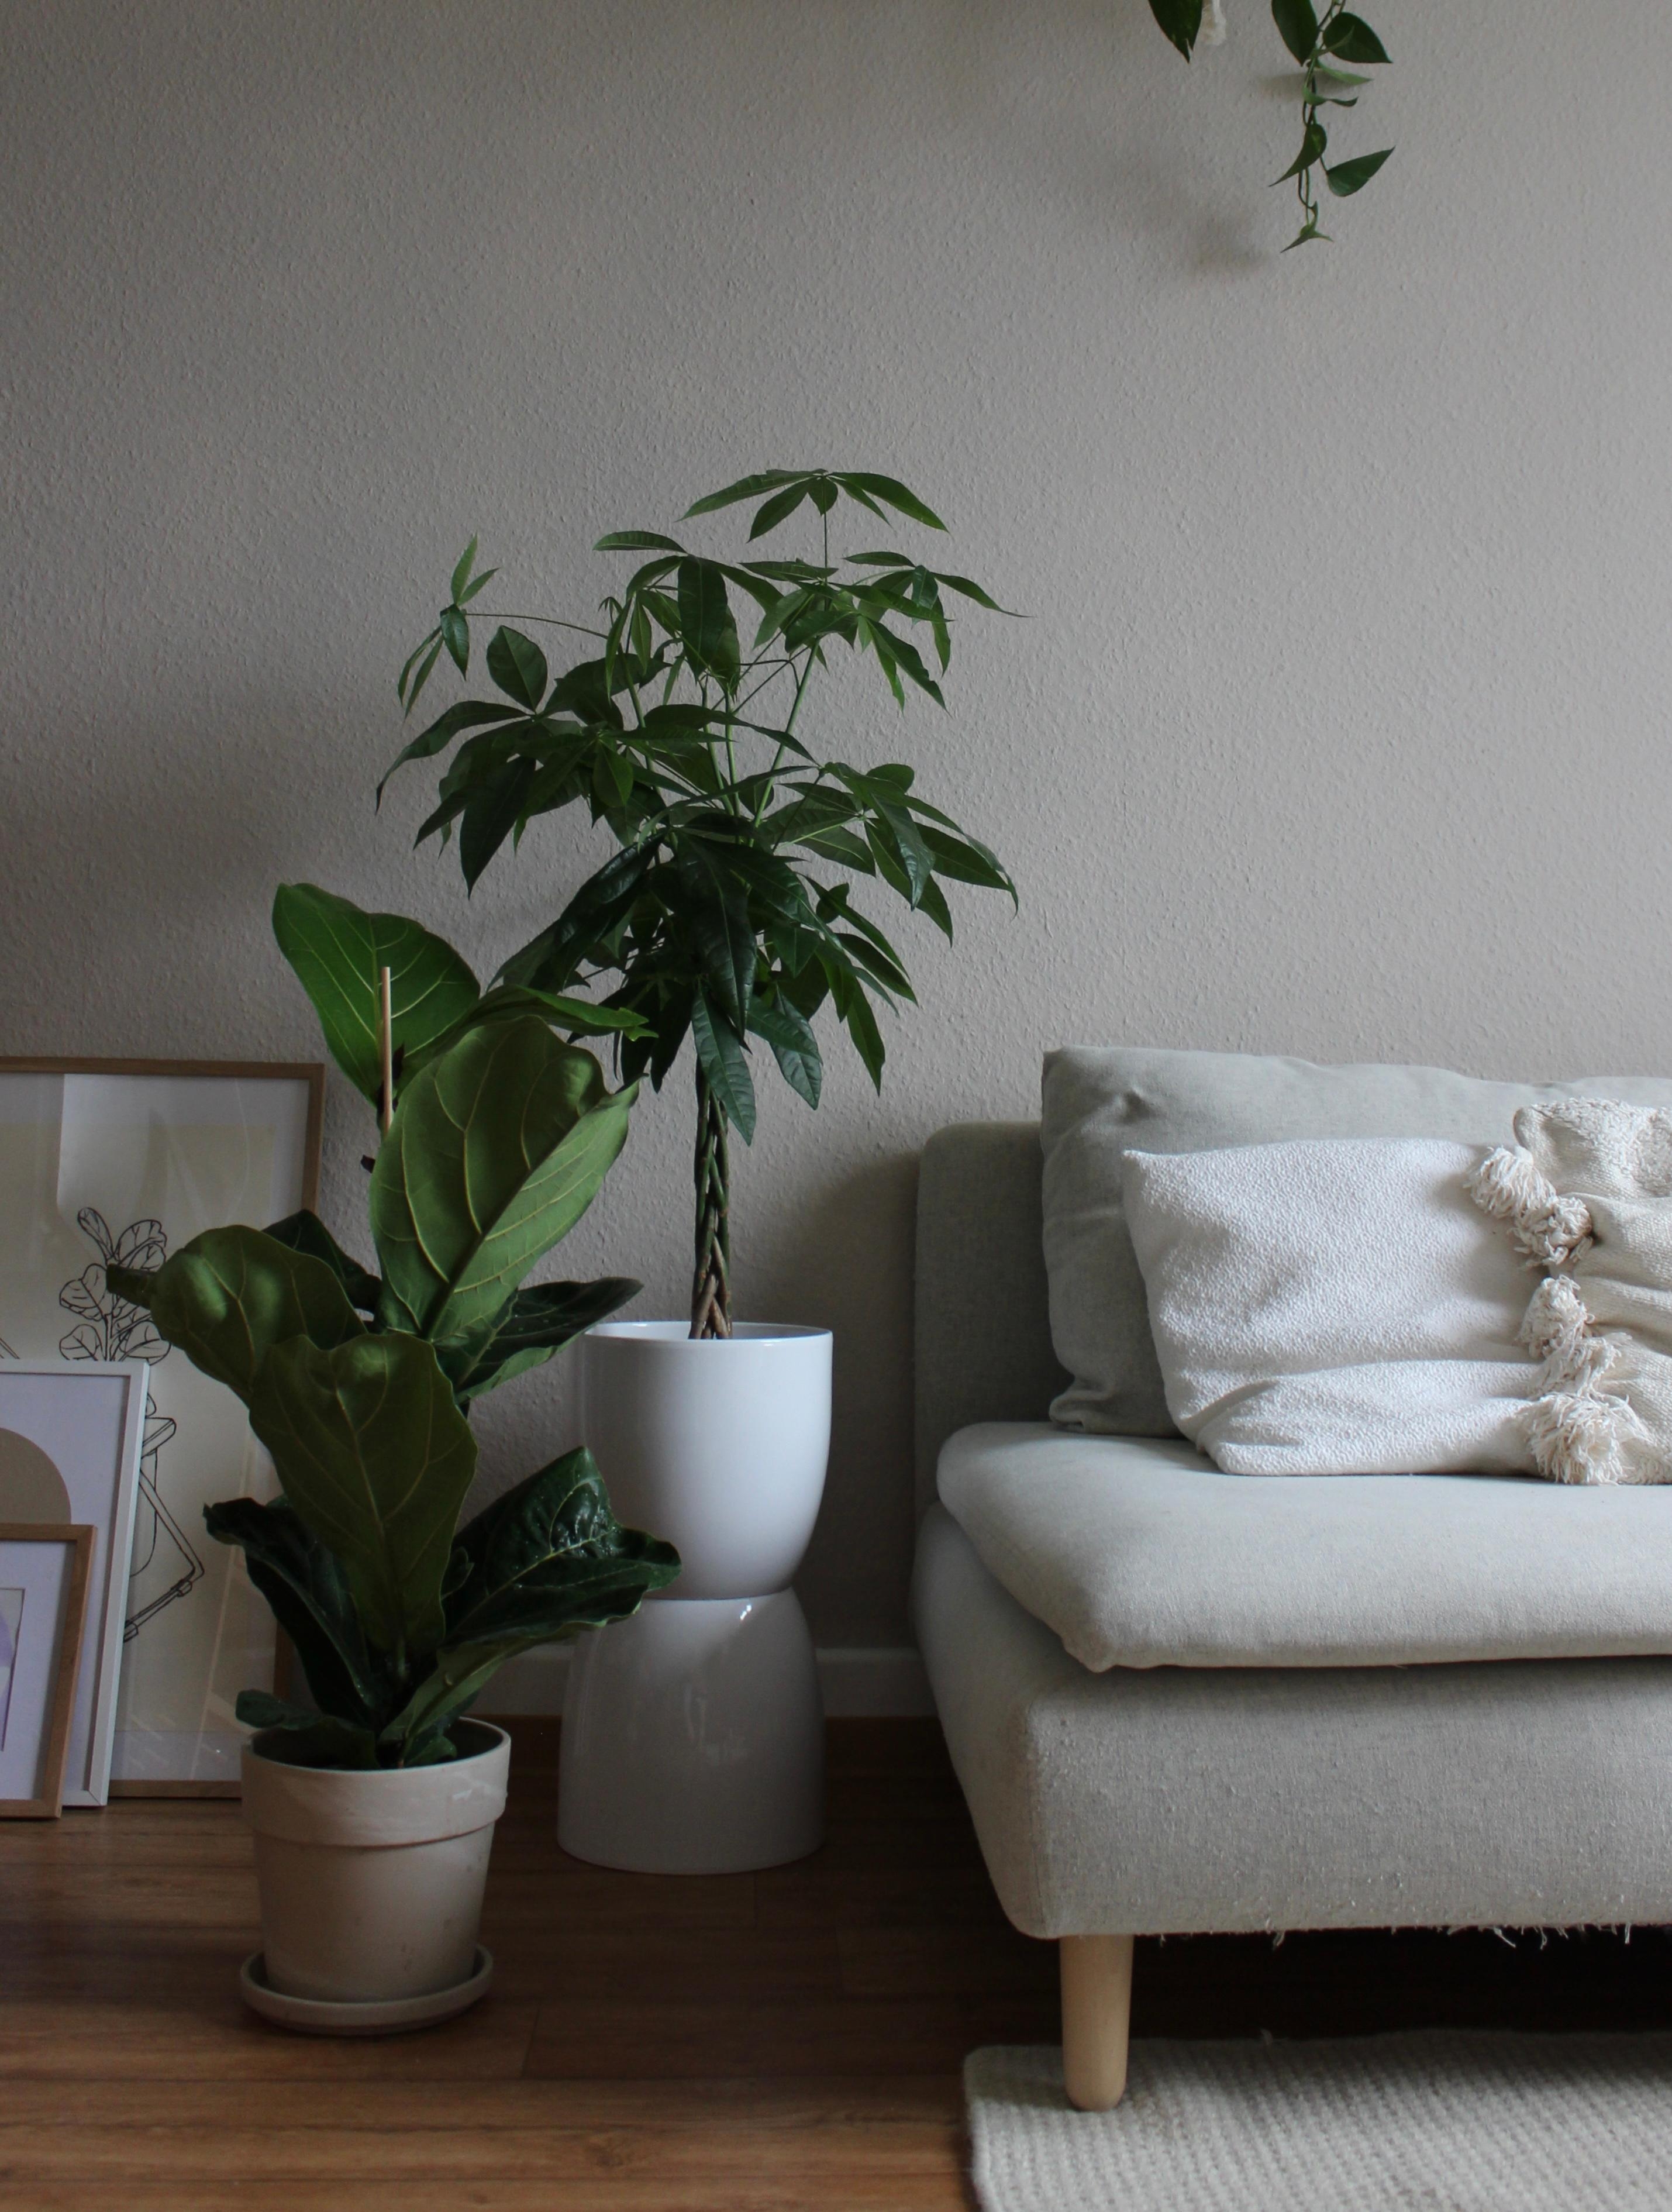 Unsere Sofaecke 🤍 #sofa #sofaecke #teppich #pflanzen #beige #zimmerpflanzen